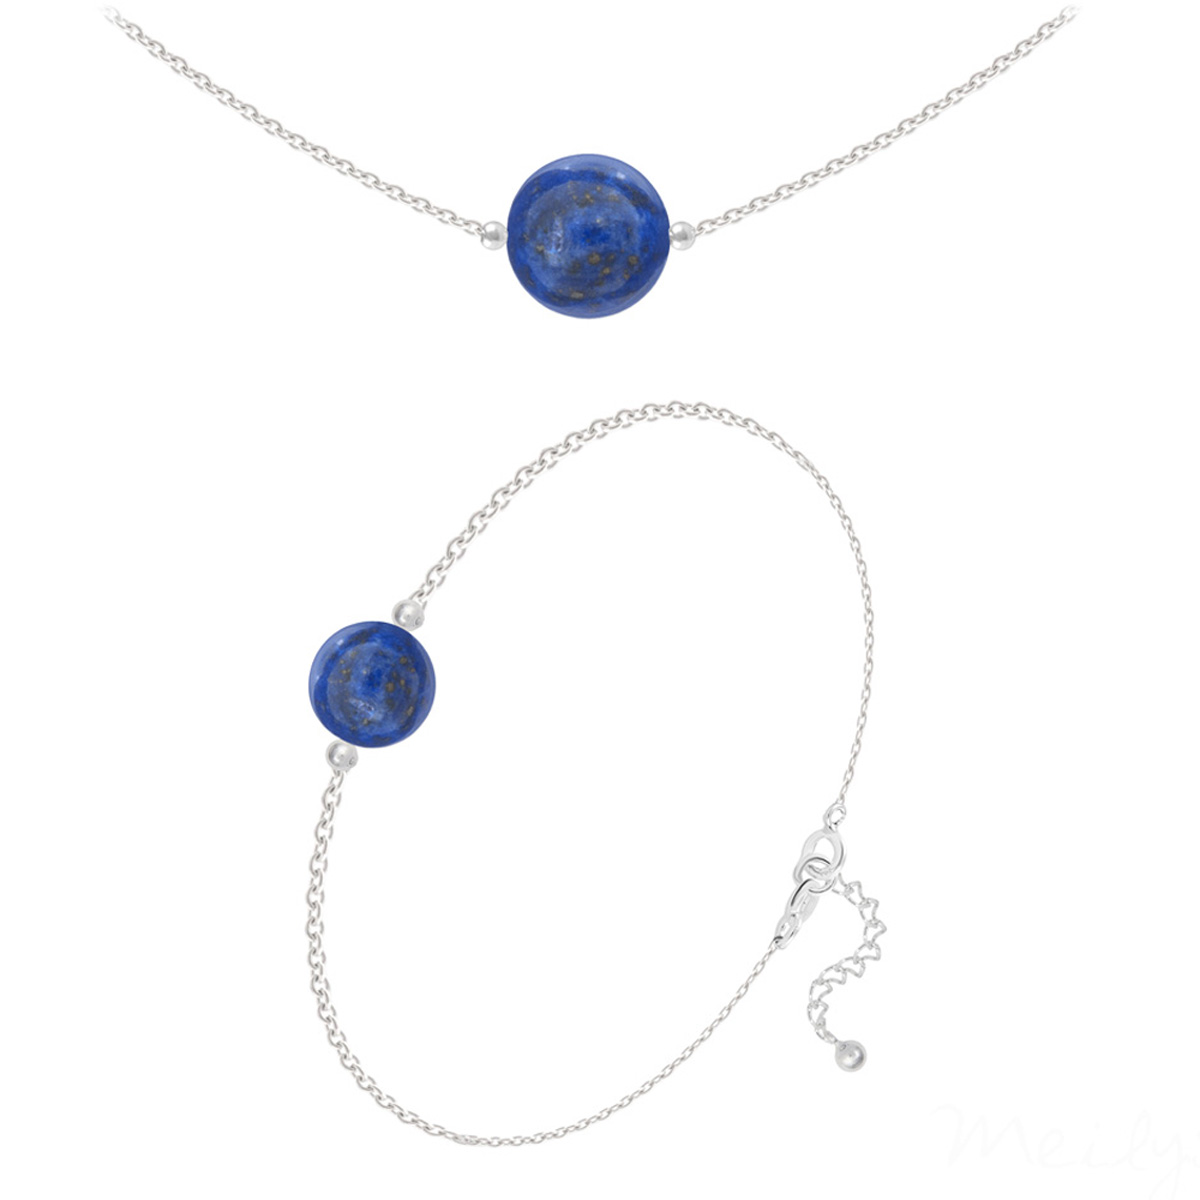 Parure argent artisanal \'Mineralia\' lapis lazuli argenté - 10 et 8 mm (collier & bracelet) - [R5982]